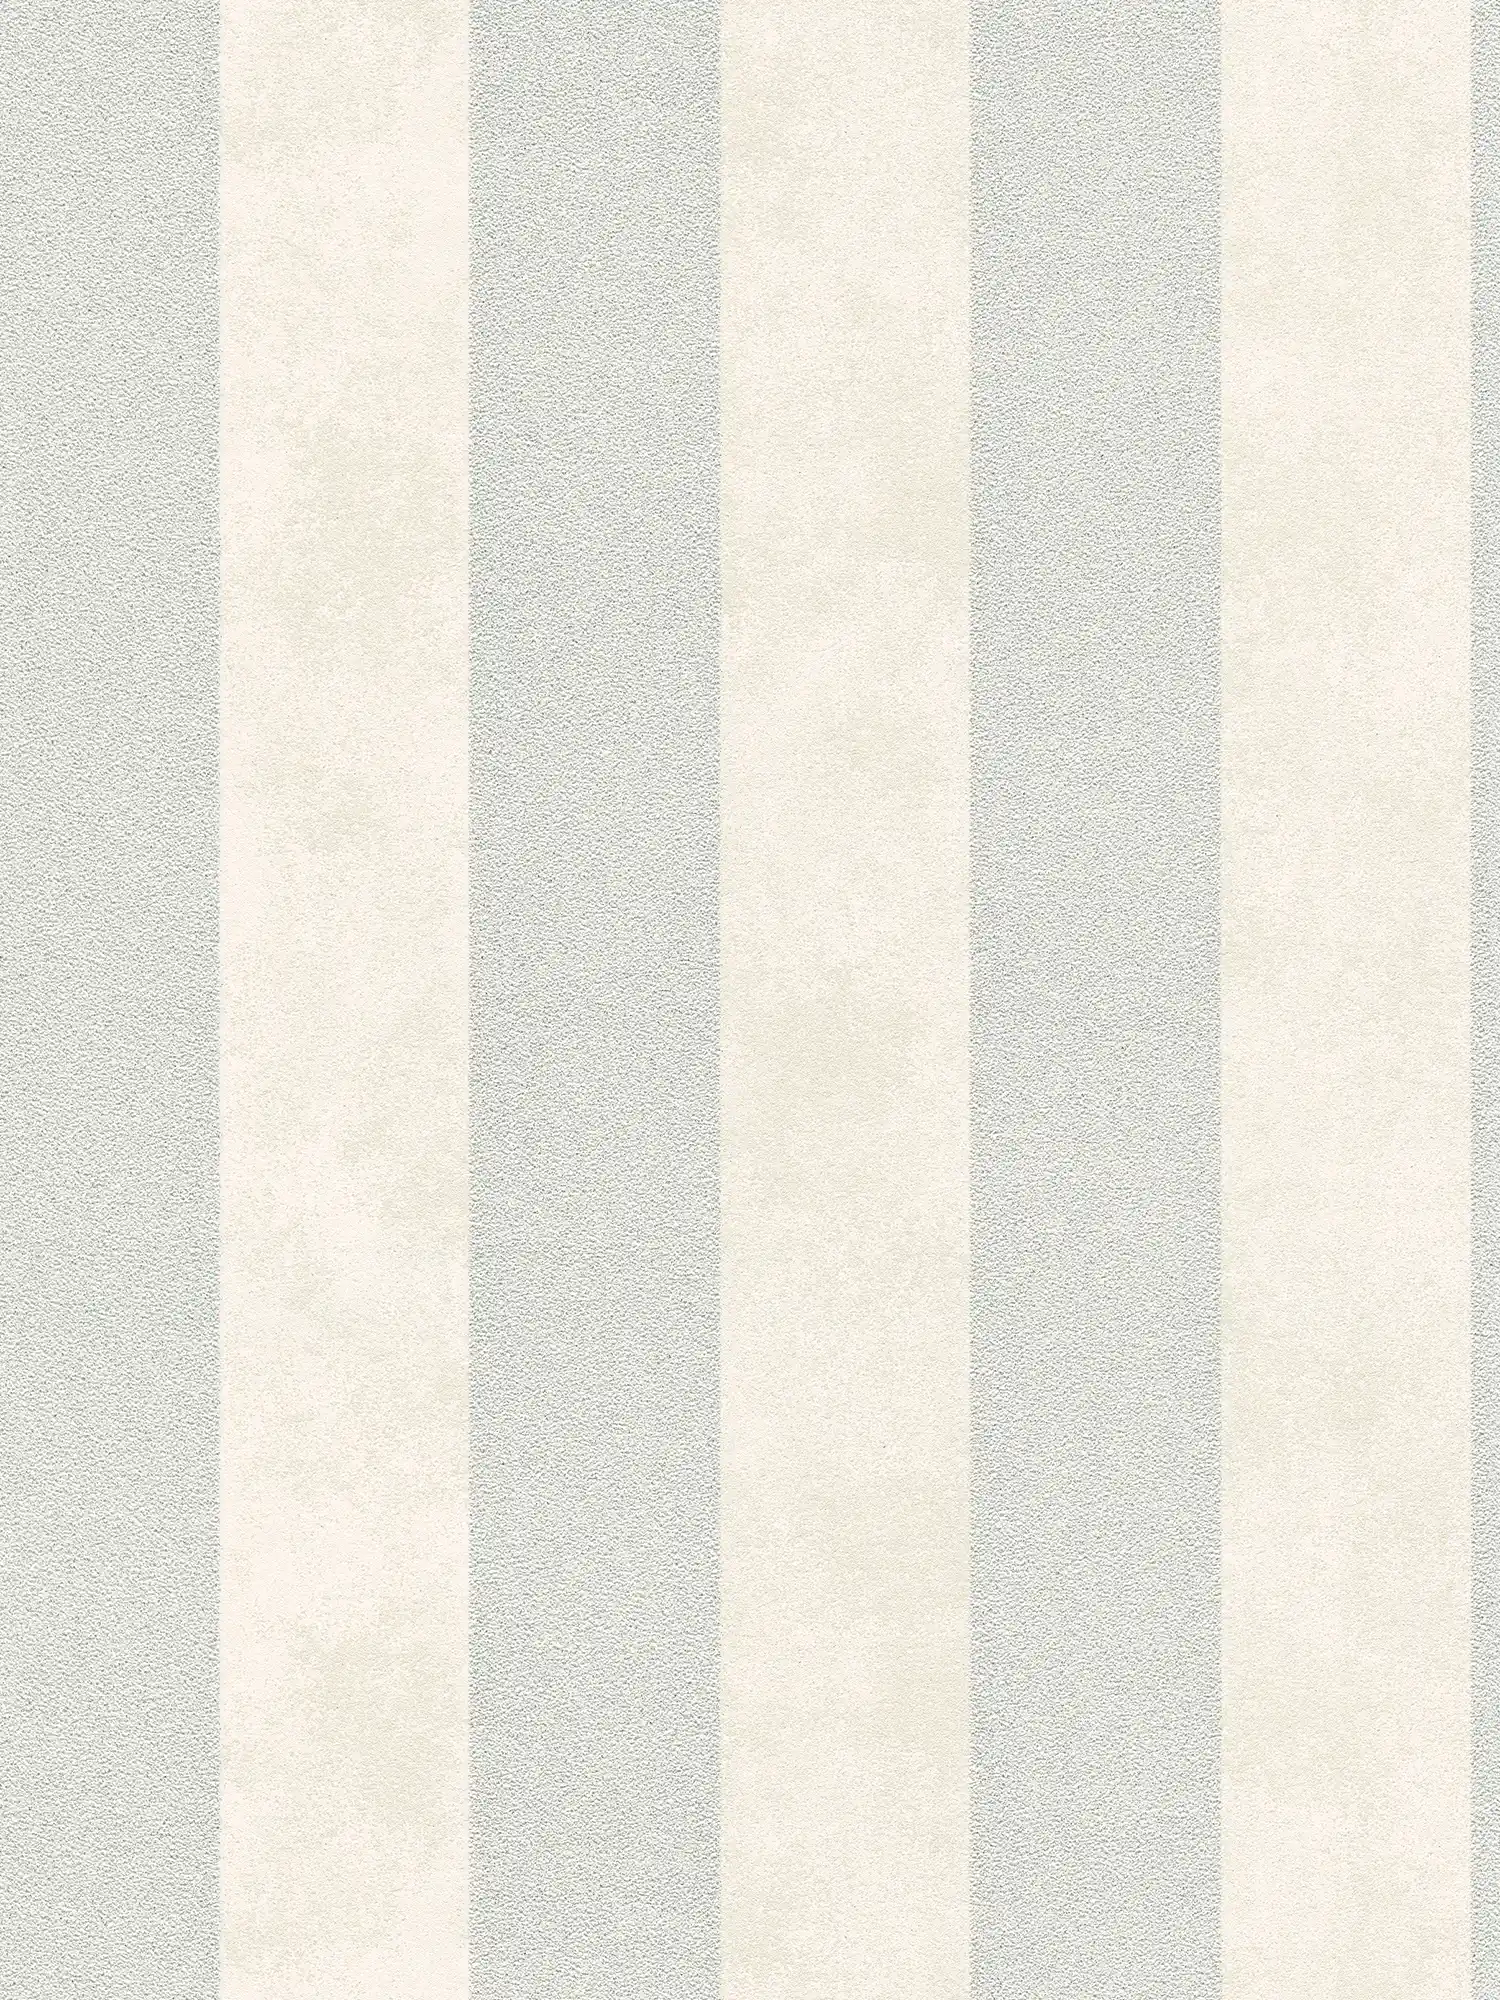 Blockstreifen-Tapete mit Farb- und Strukturmuster – Silber, Grau, Weiß
